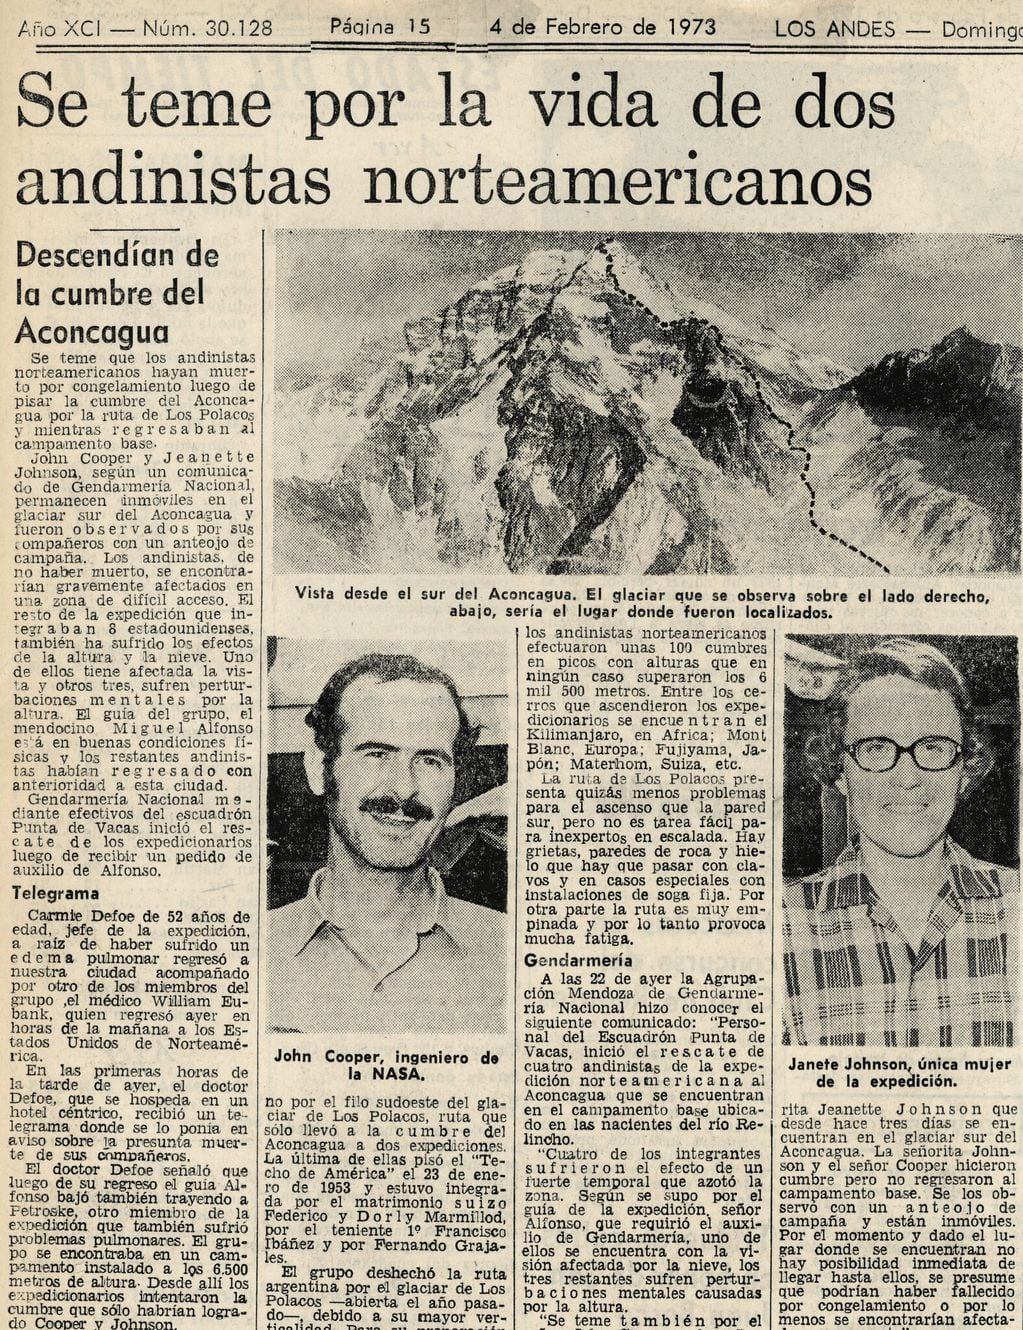 Cobertura de Los Andes en 1973 sobre los andinistas fallecidos en el cerro Aconcagua (Archivo)